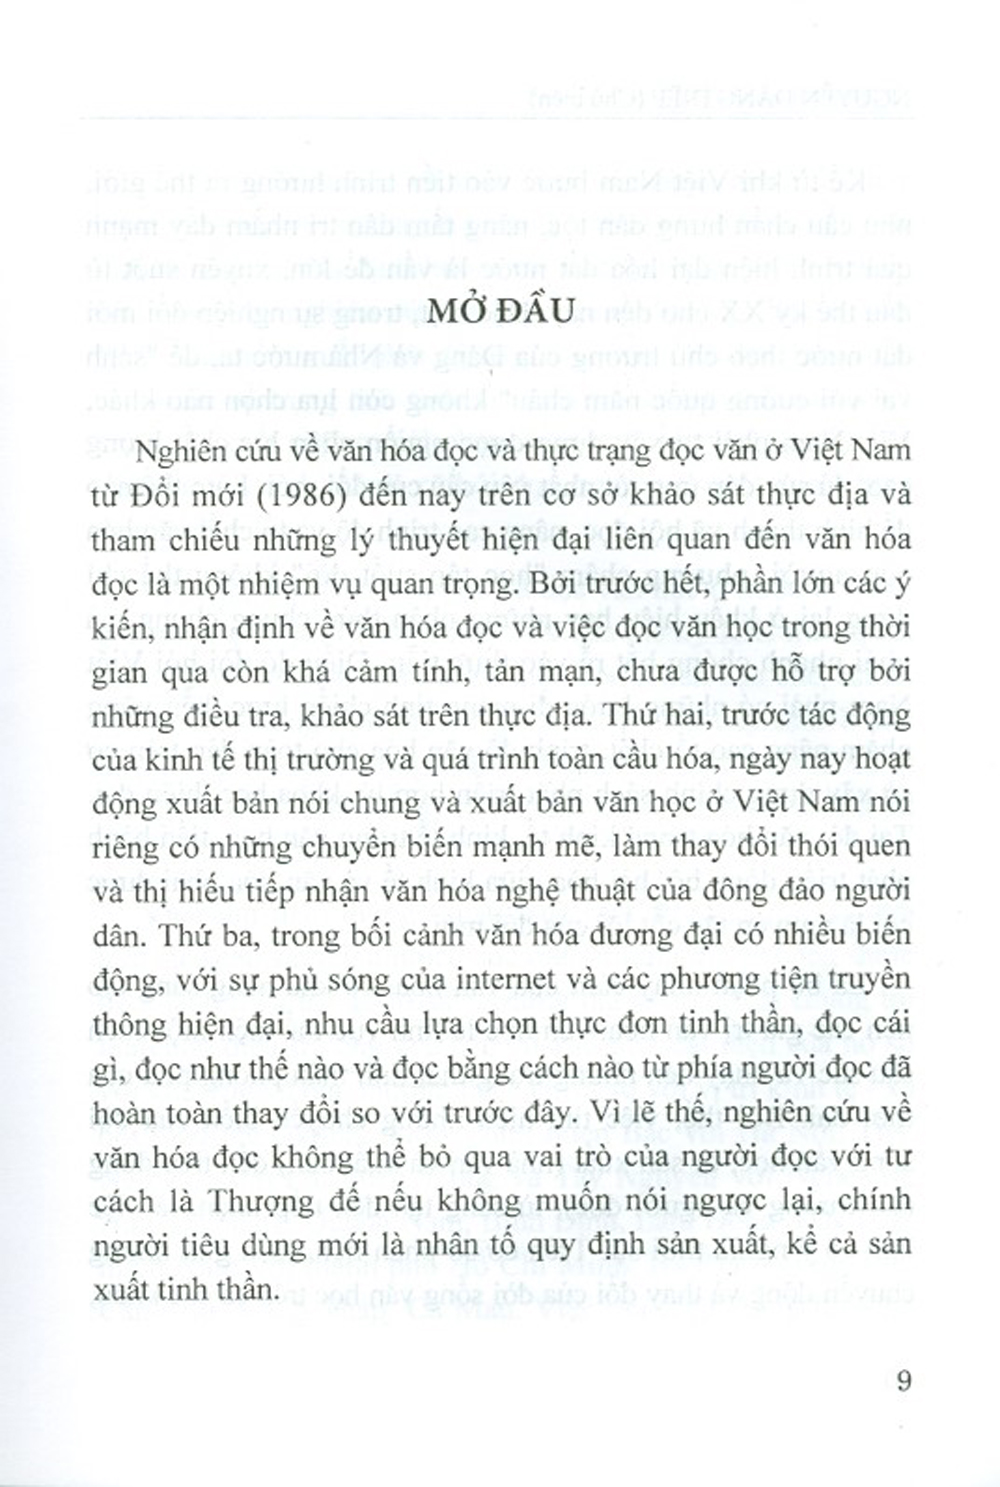 Văn Hóa Đọc Ở Việt Nam Hiện Nay (Từ Thực Tiễn Tiếp Nhận Văn Học)